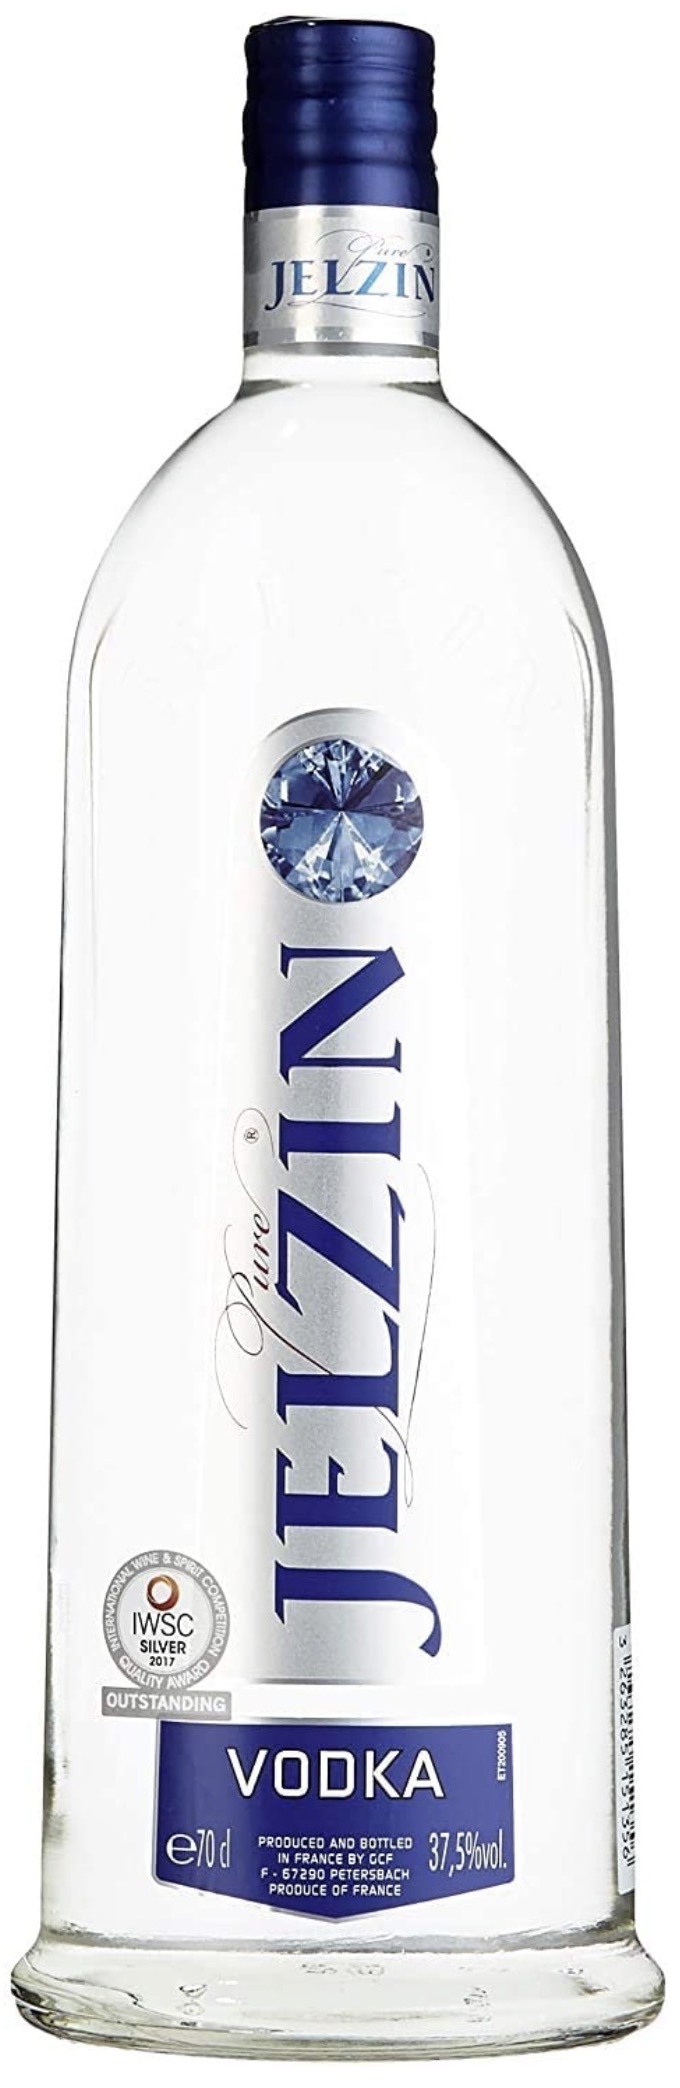 Jelzin Vodka 37,5% vol. 0,7L